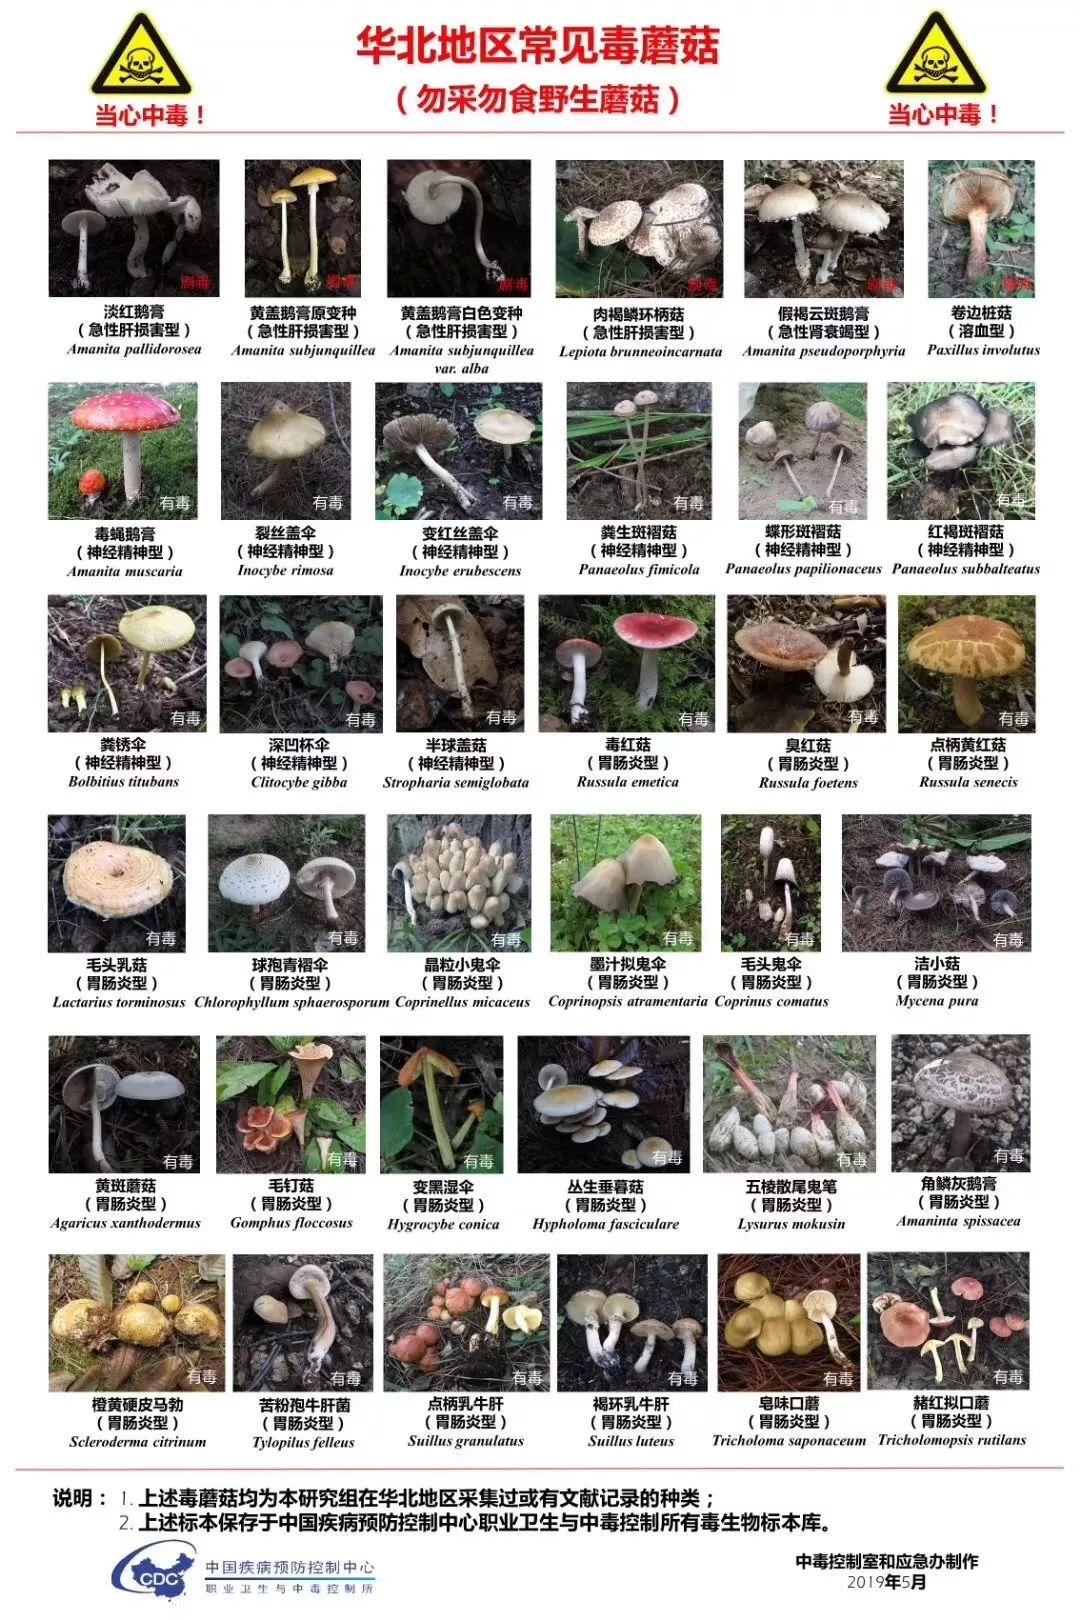 有毒蘑菇 品种图片